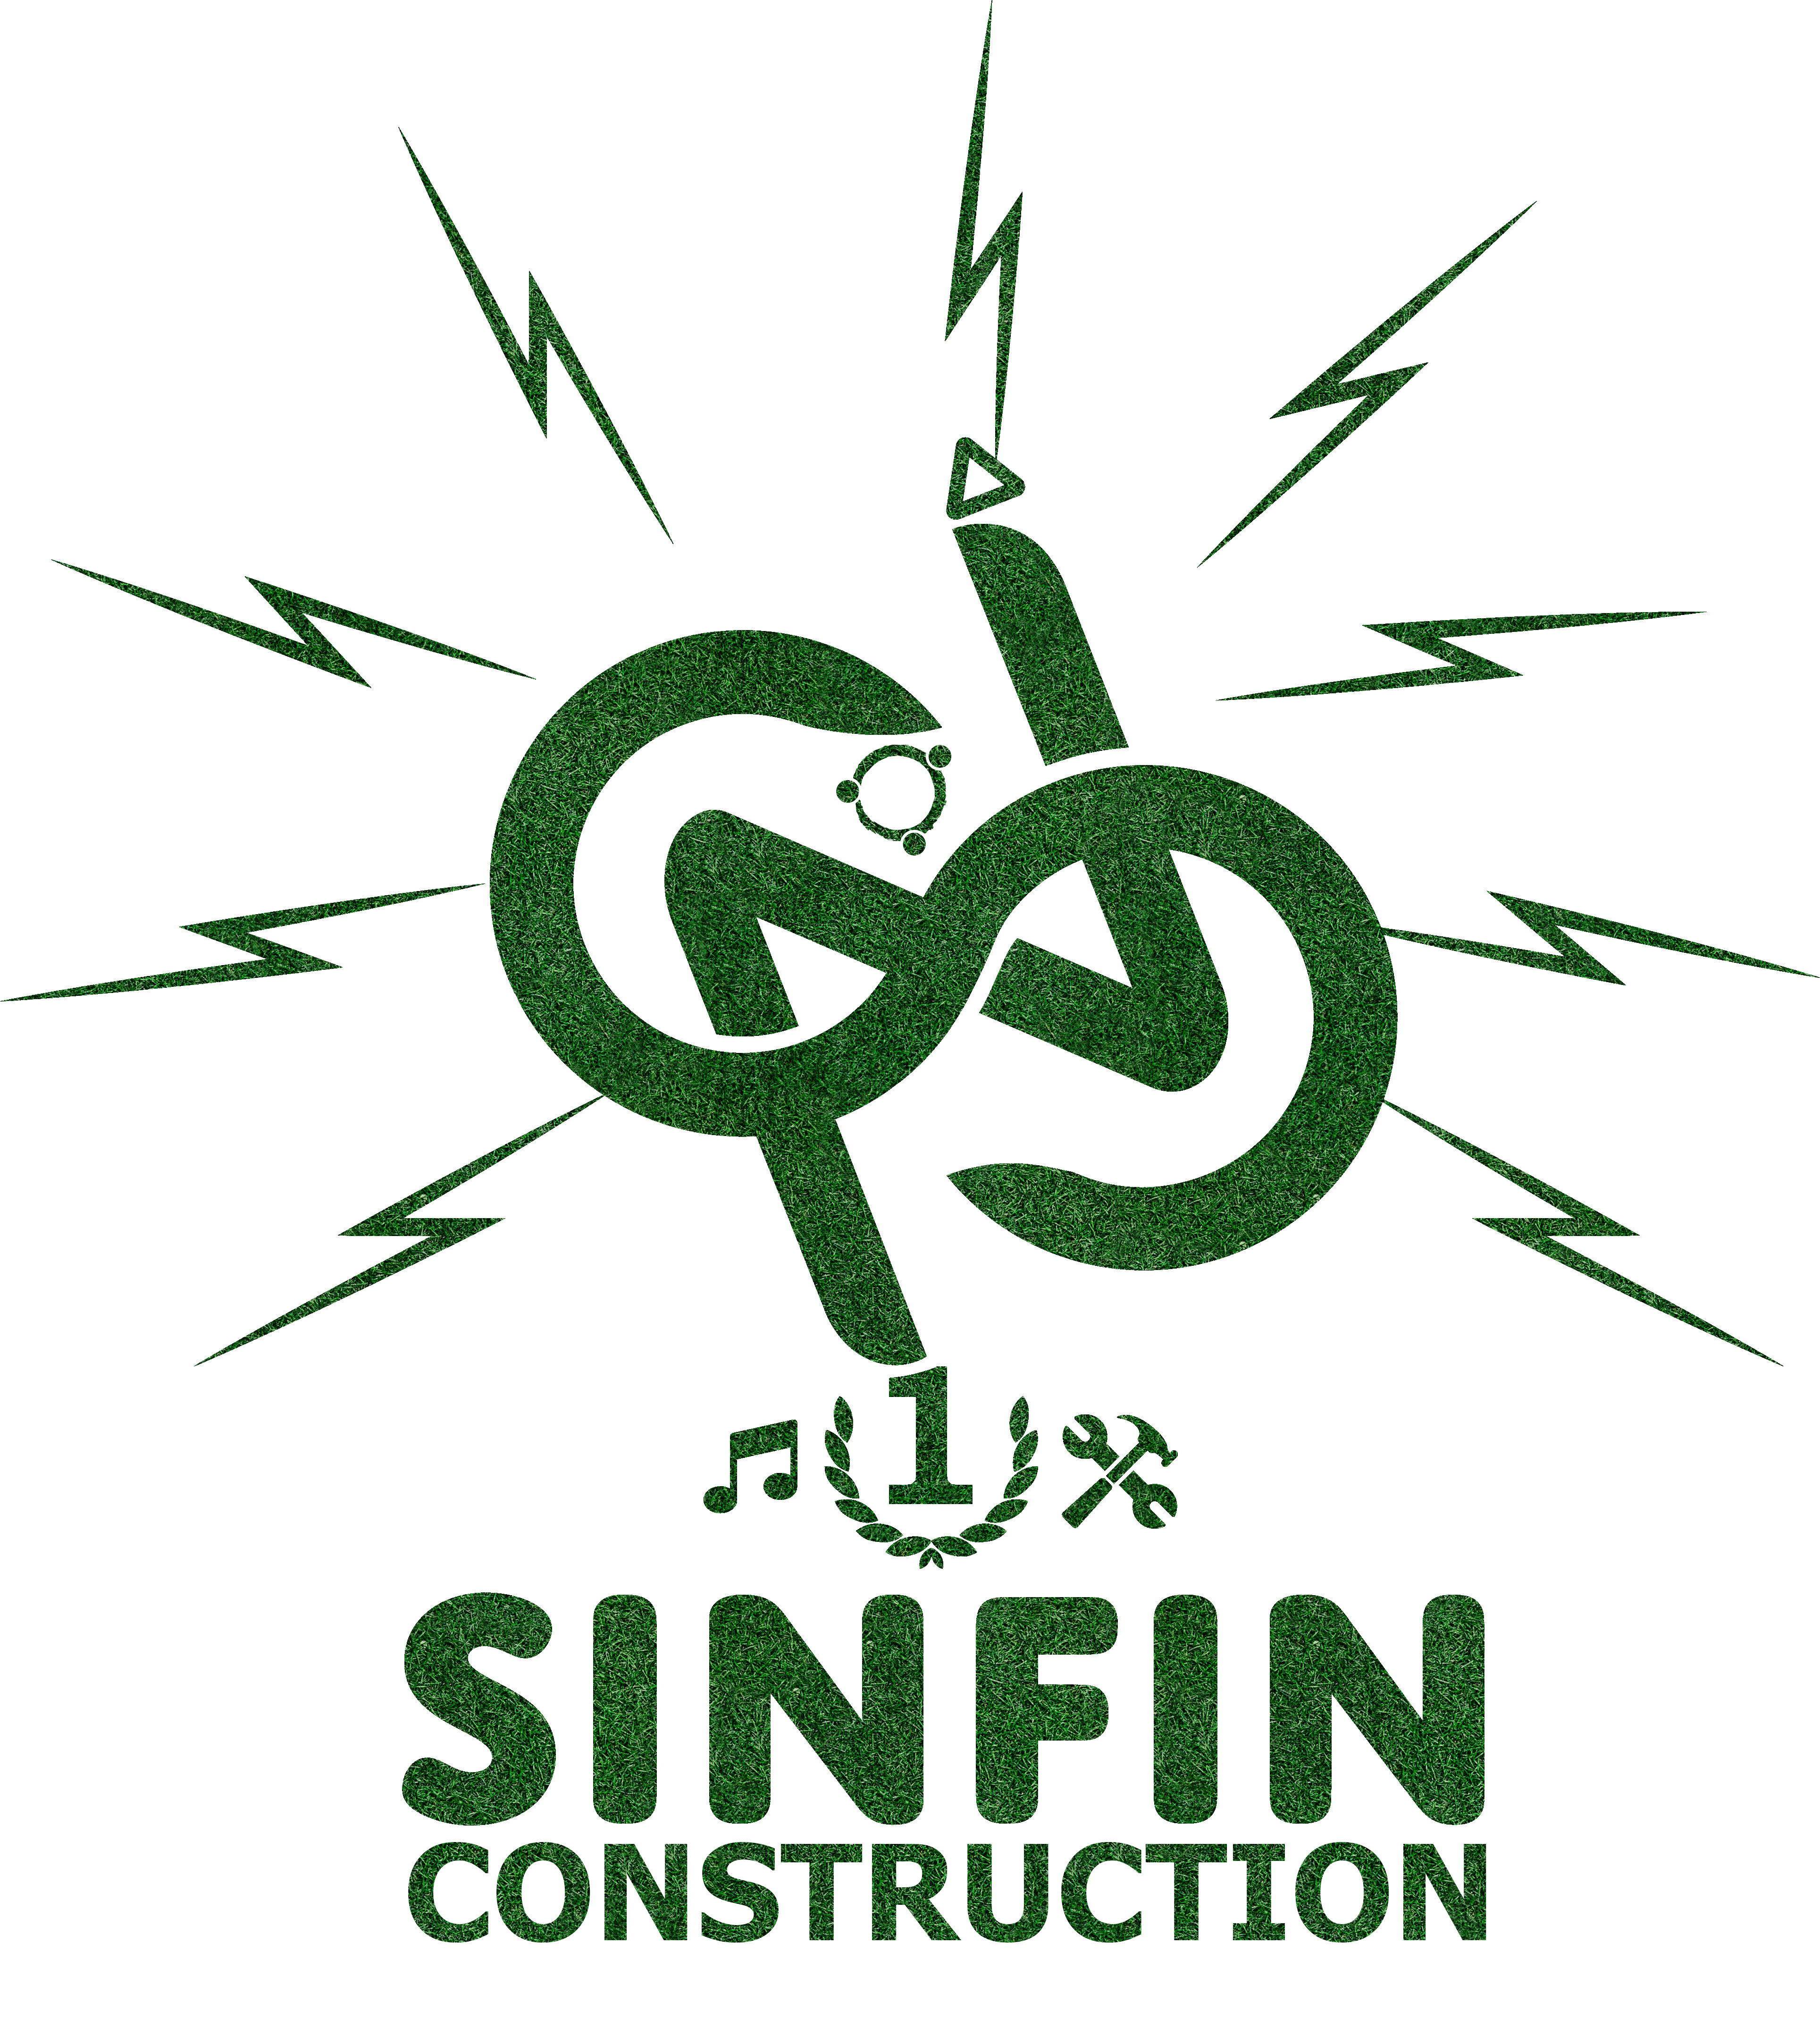 SinFin Construction